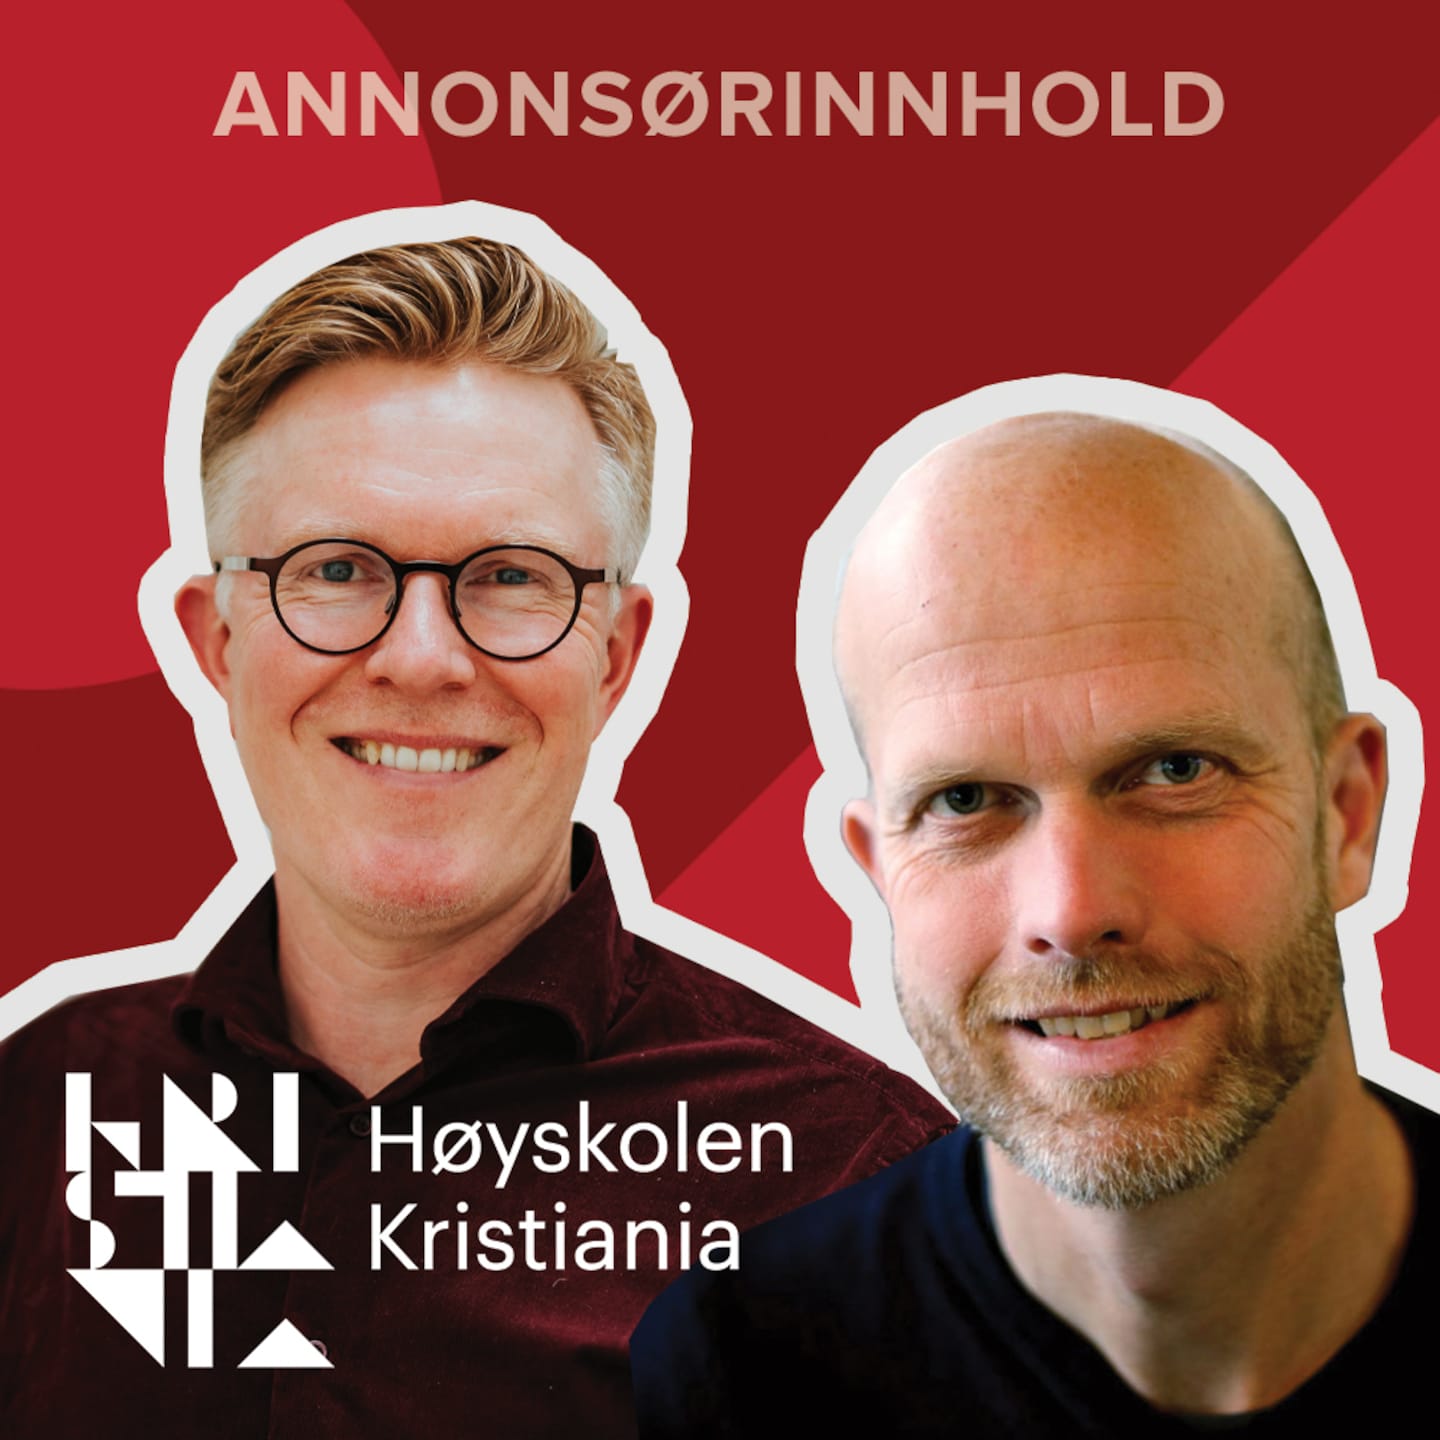 Annonsørinnhold fra Høyskolen Kristiania: Hvordan kan videreutdanning løse den norske kompetansekrisen?